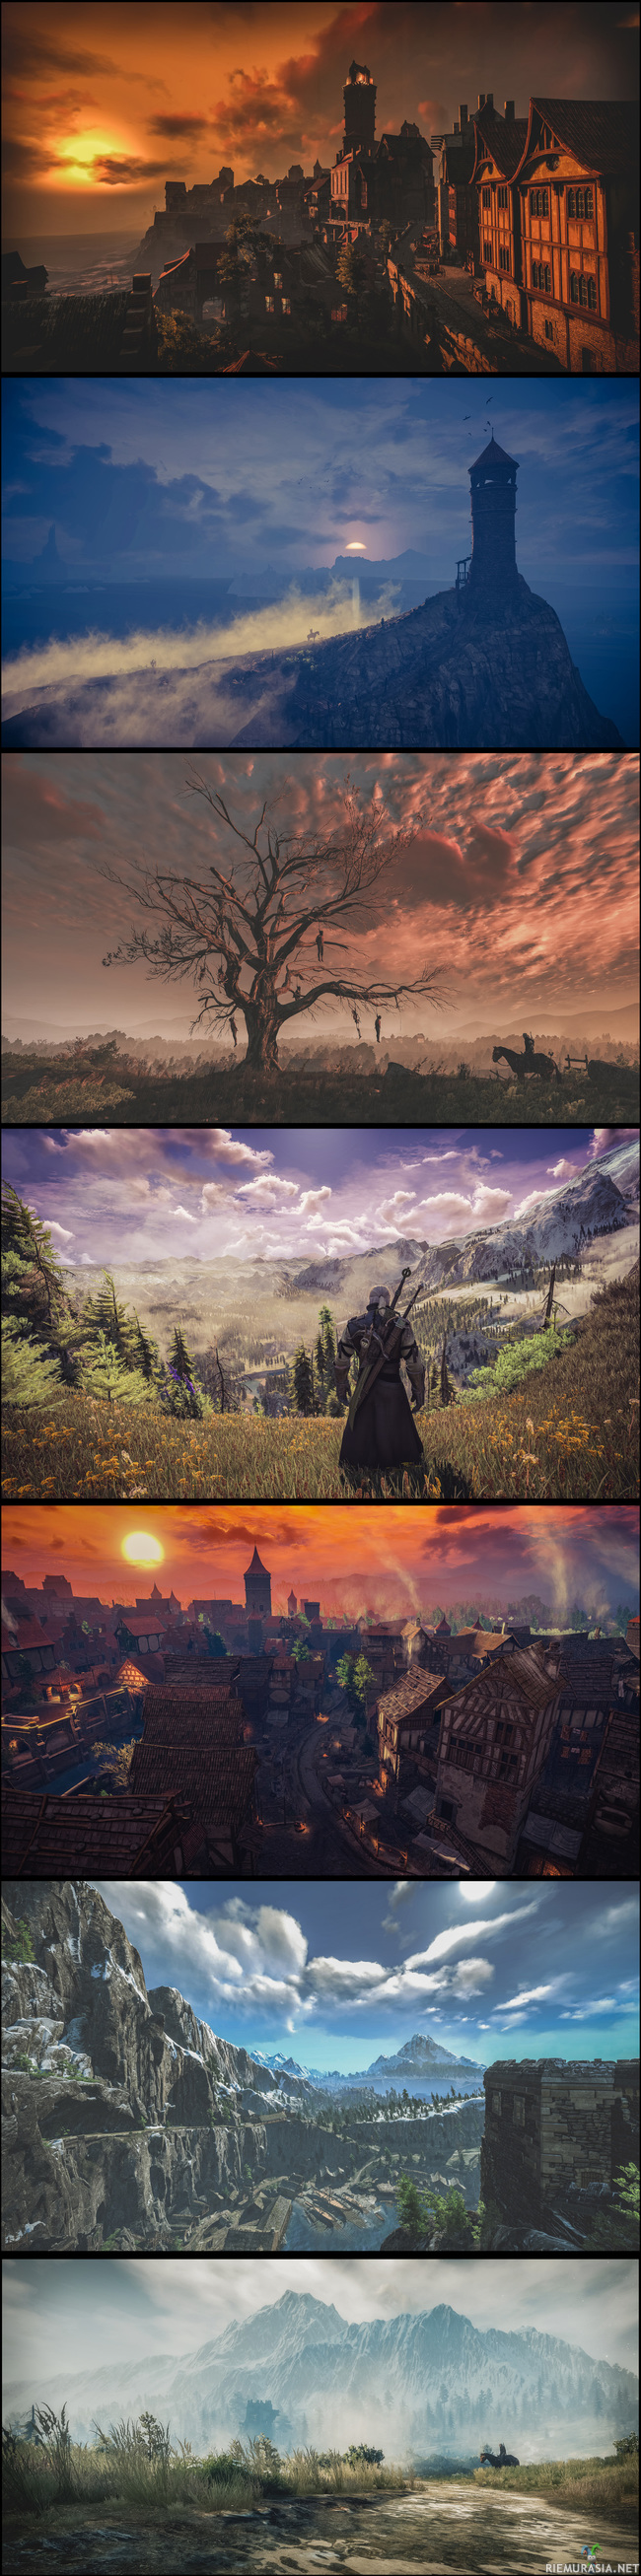 Witcher 3 pelimaailmasta kuvia - Virtuaalista valokuvaamista pitkin poikin Witcherin maailmaa. Vielä on paljon paikkoja zoomailtavana...